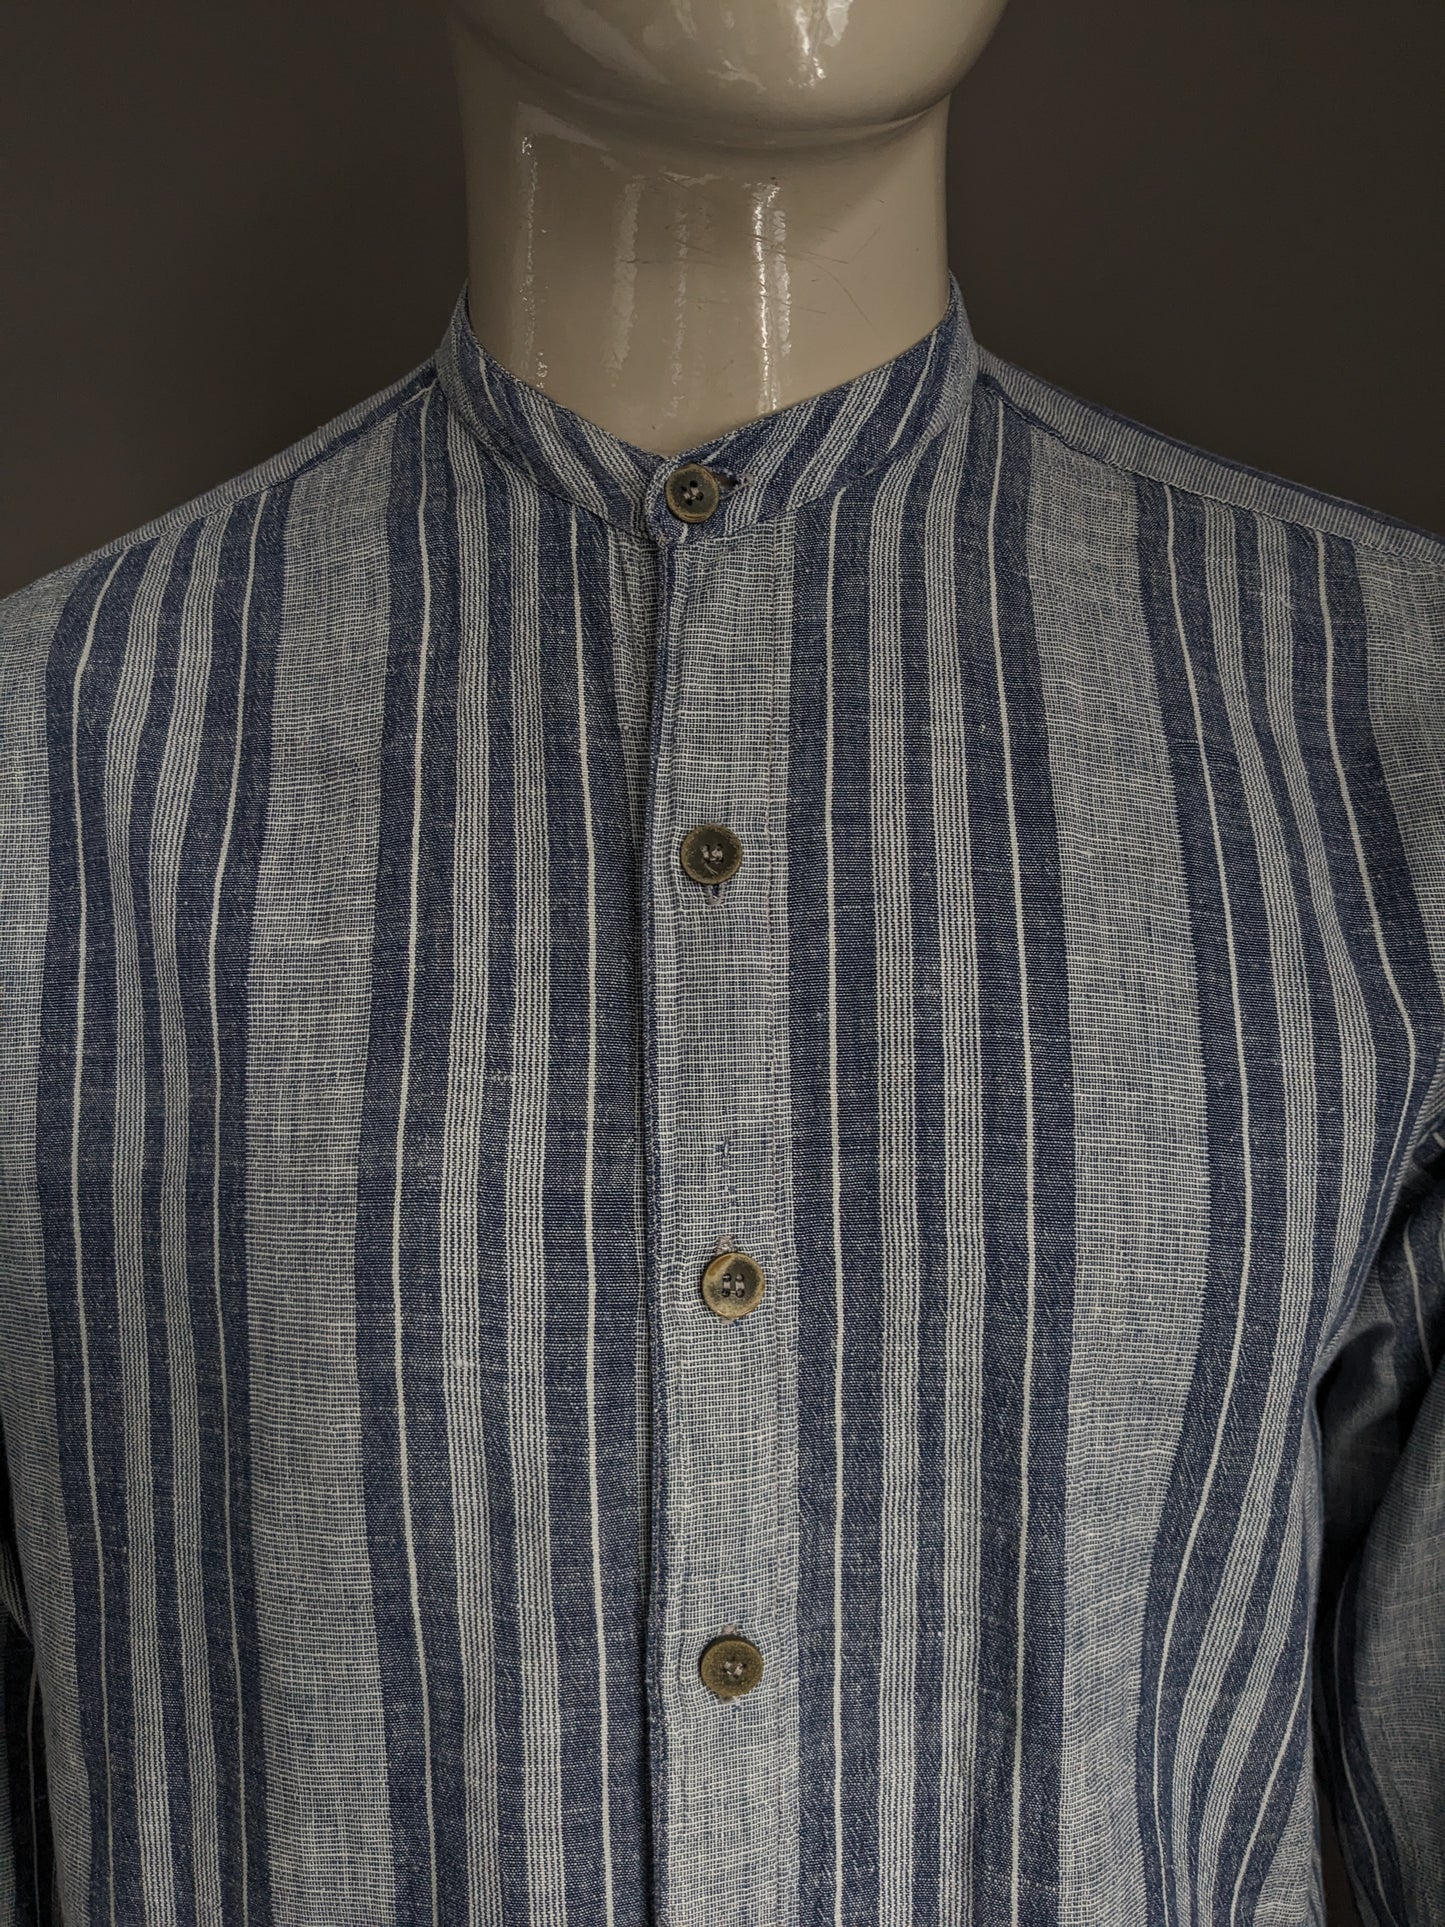 Vintage Casa Blanca overhemd opstaande / farmers / Mao kraag. Blauw grijs gestreept. Maat XL.